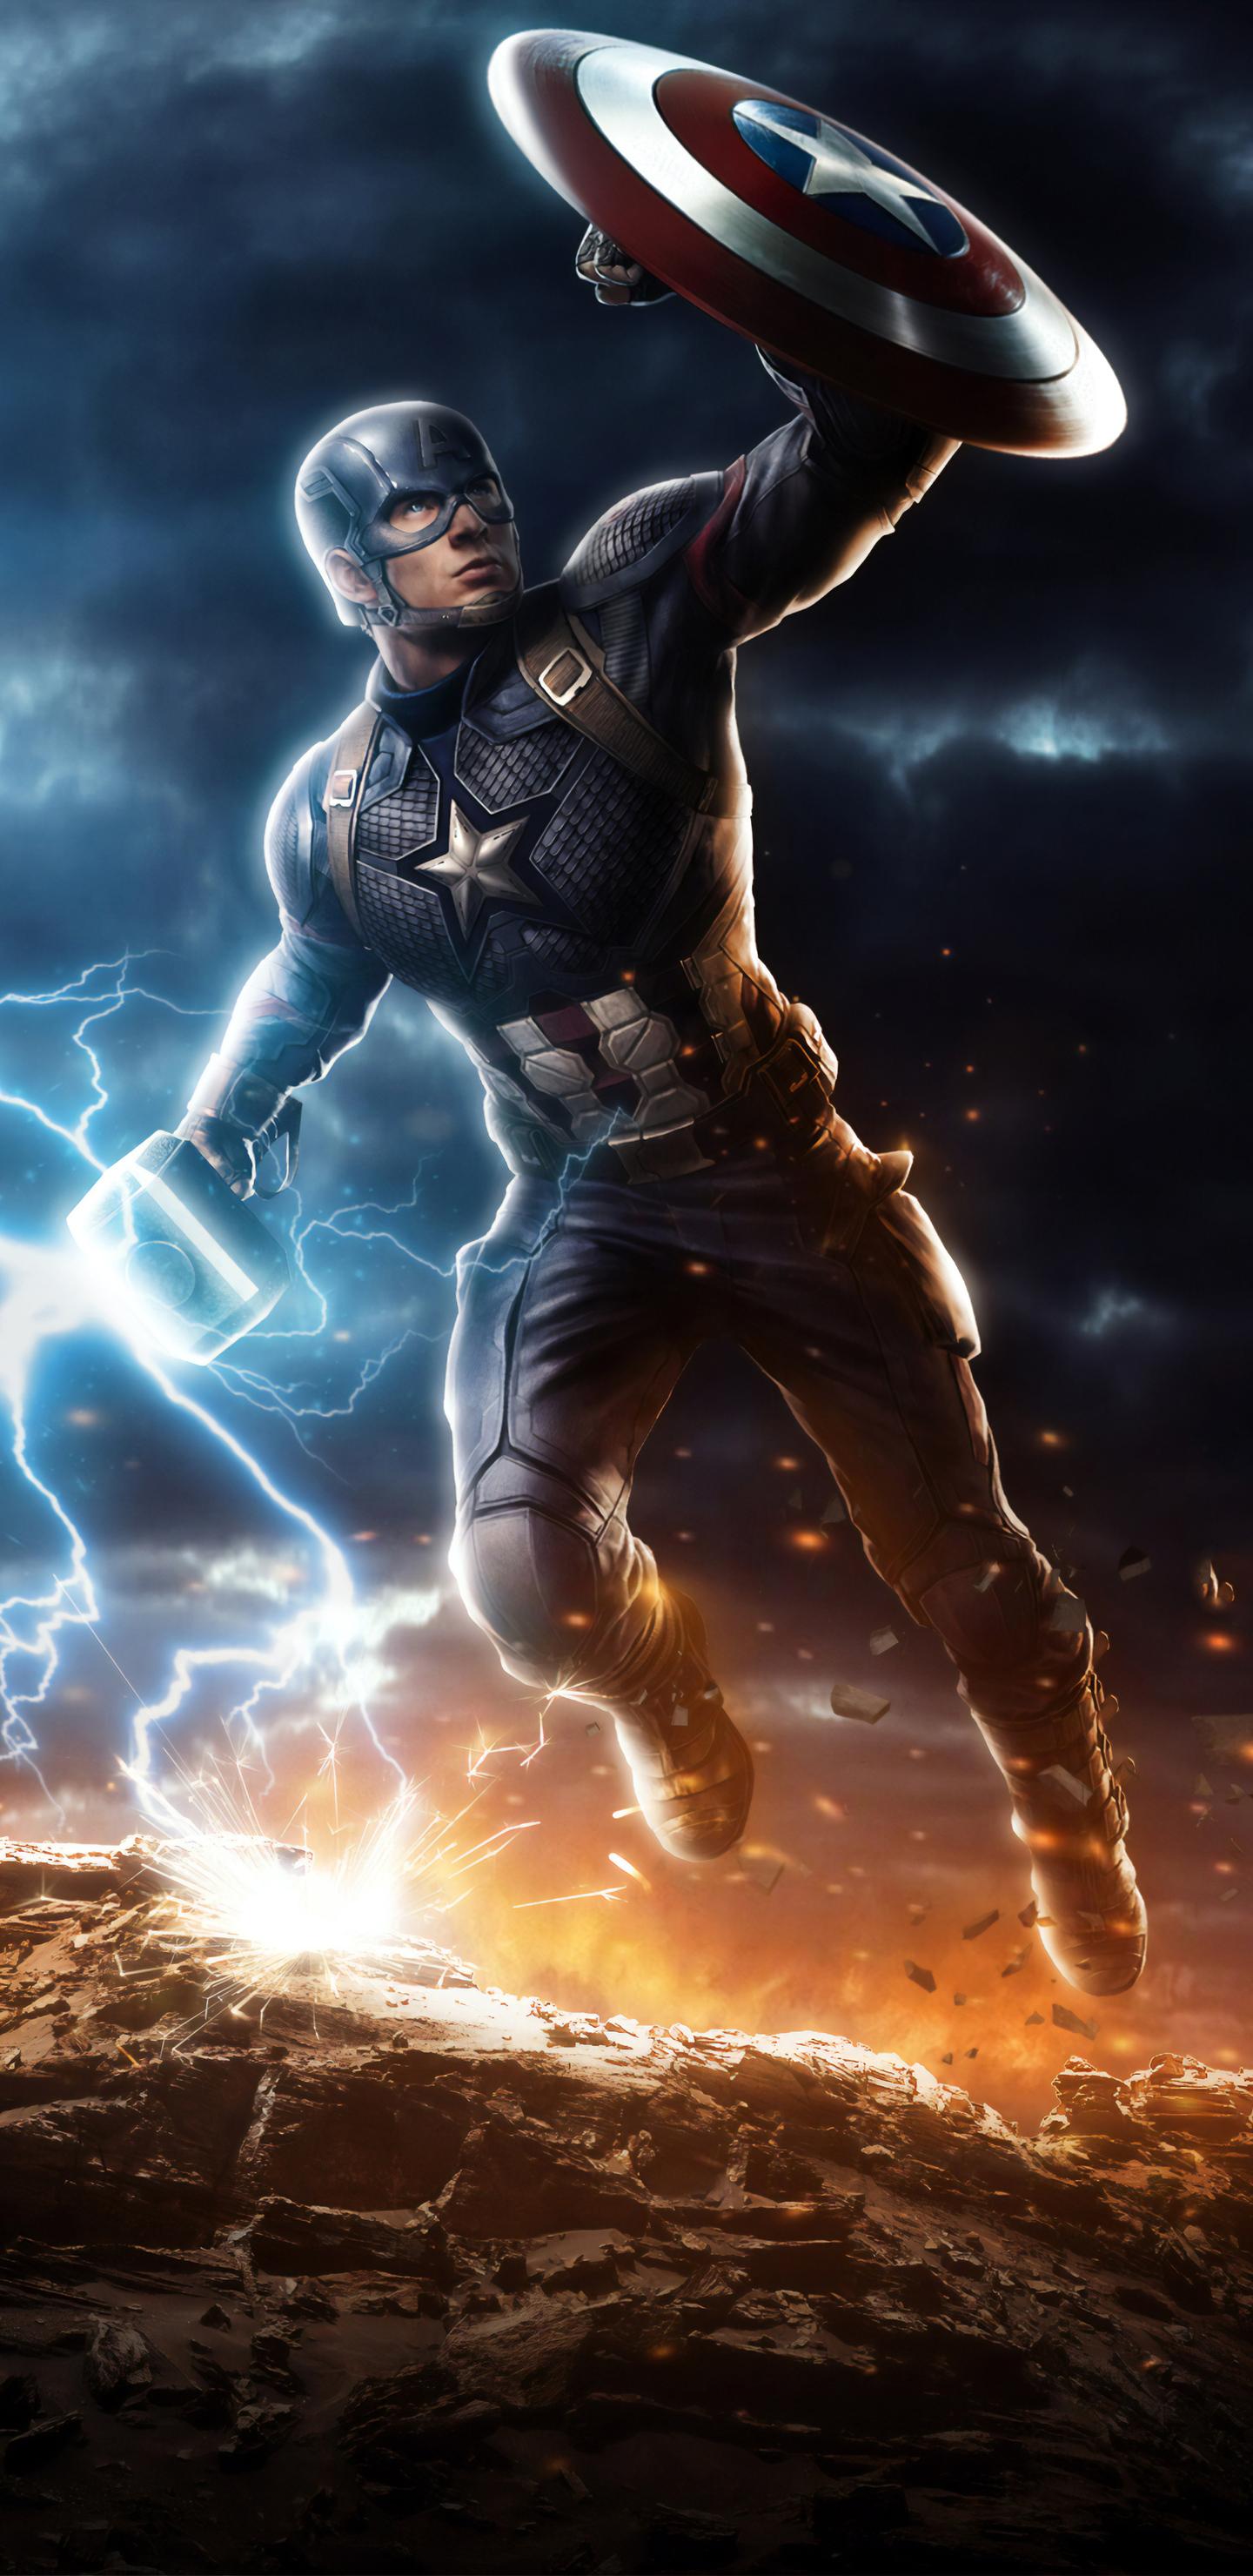 1440 x 2960 · jpeg - 1440x2960 Captain America Mjolnir Avengers Endgame 4k Art Samsung ...